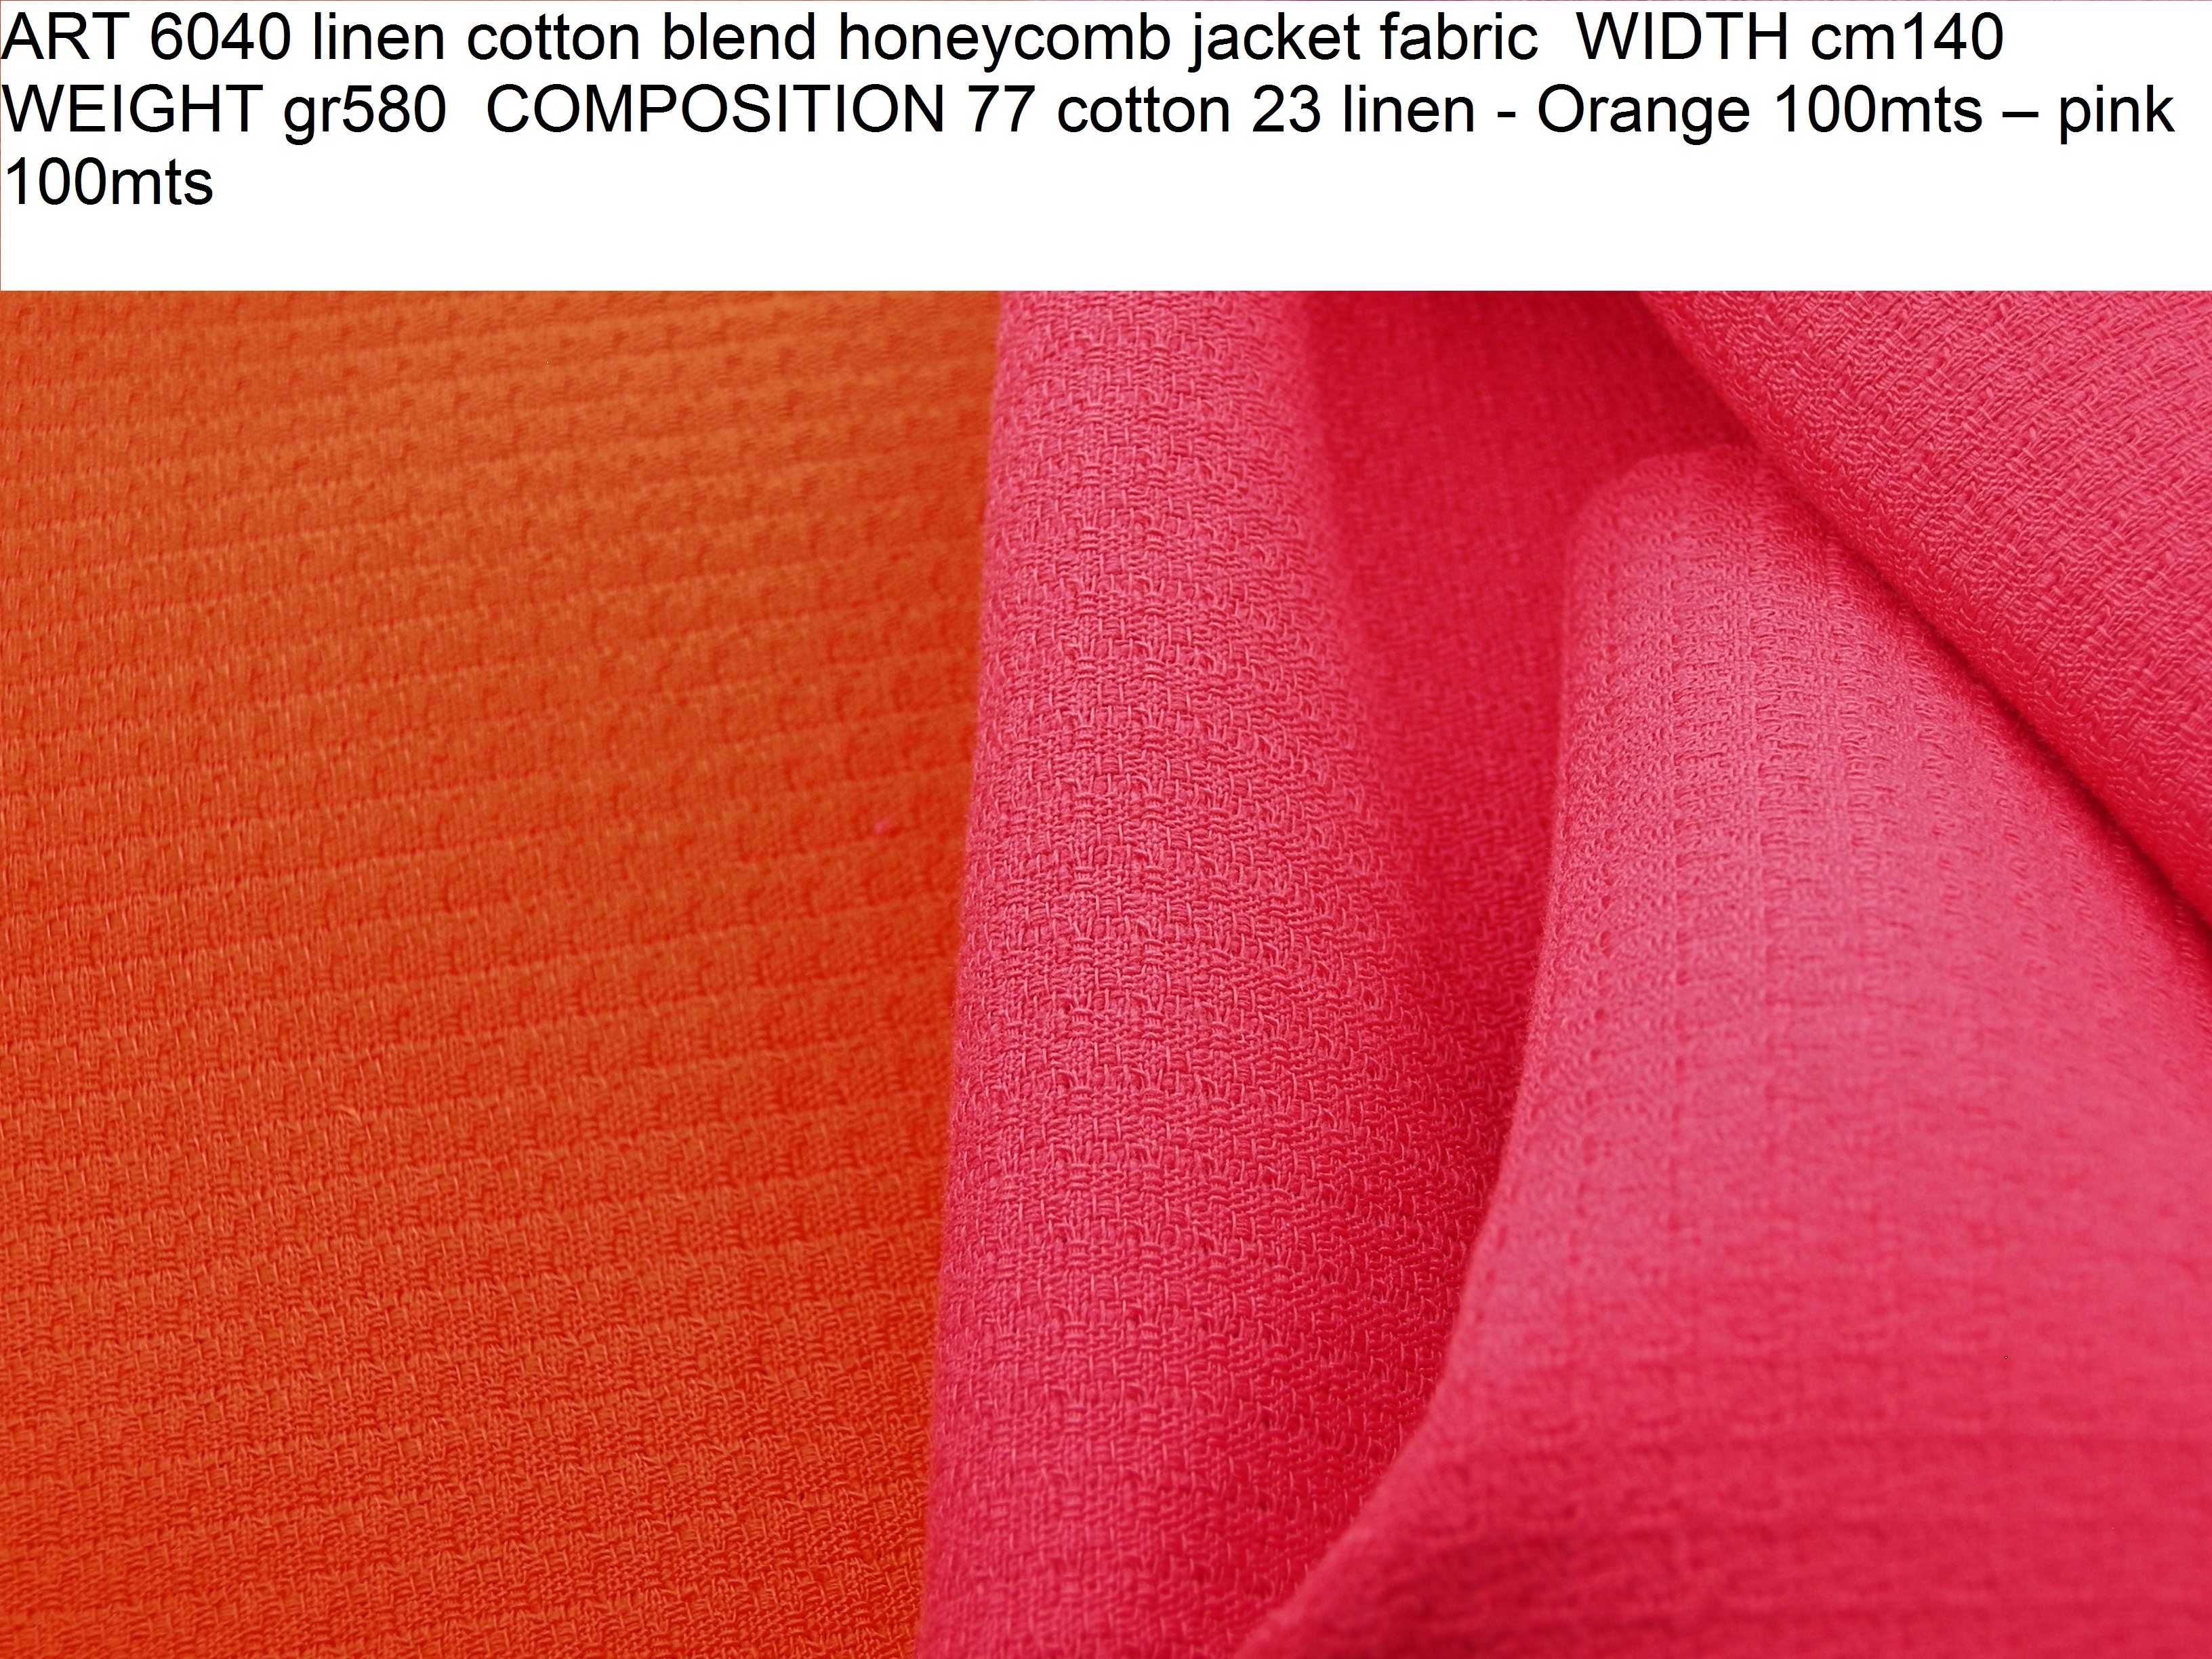 ART 6040 linen cotton blend honeycomb jacket fabric WIDTH cm140 WEIGHT gr580 COMPOSITION 77 cotton 23 linen - Orange 100mts – pink 100mts